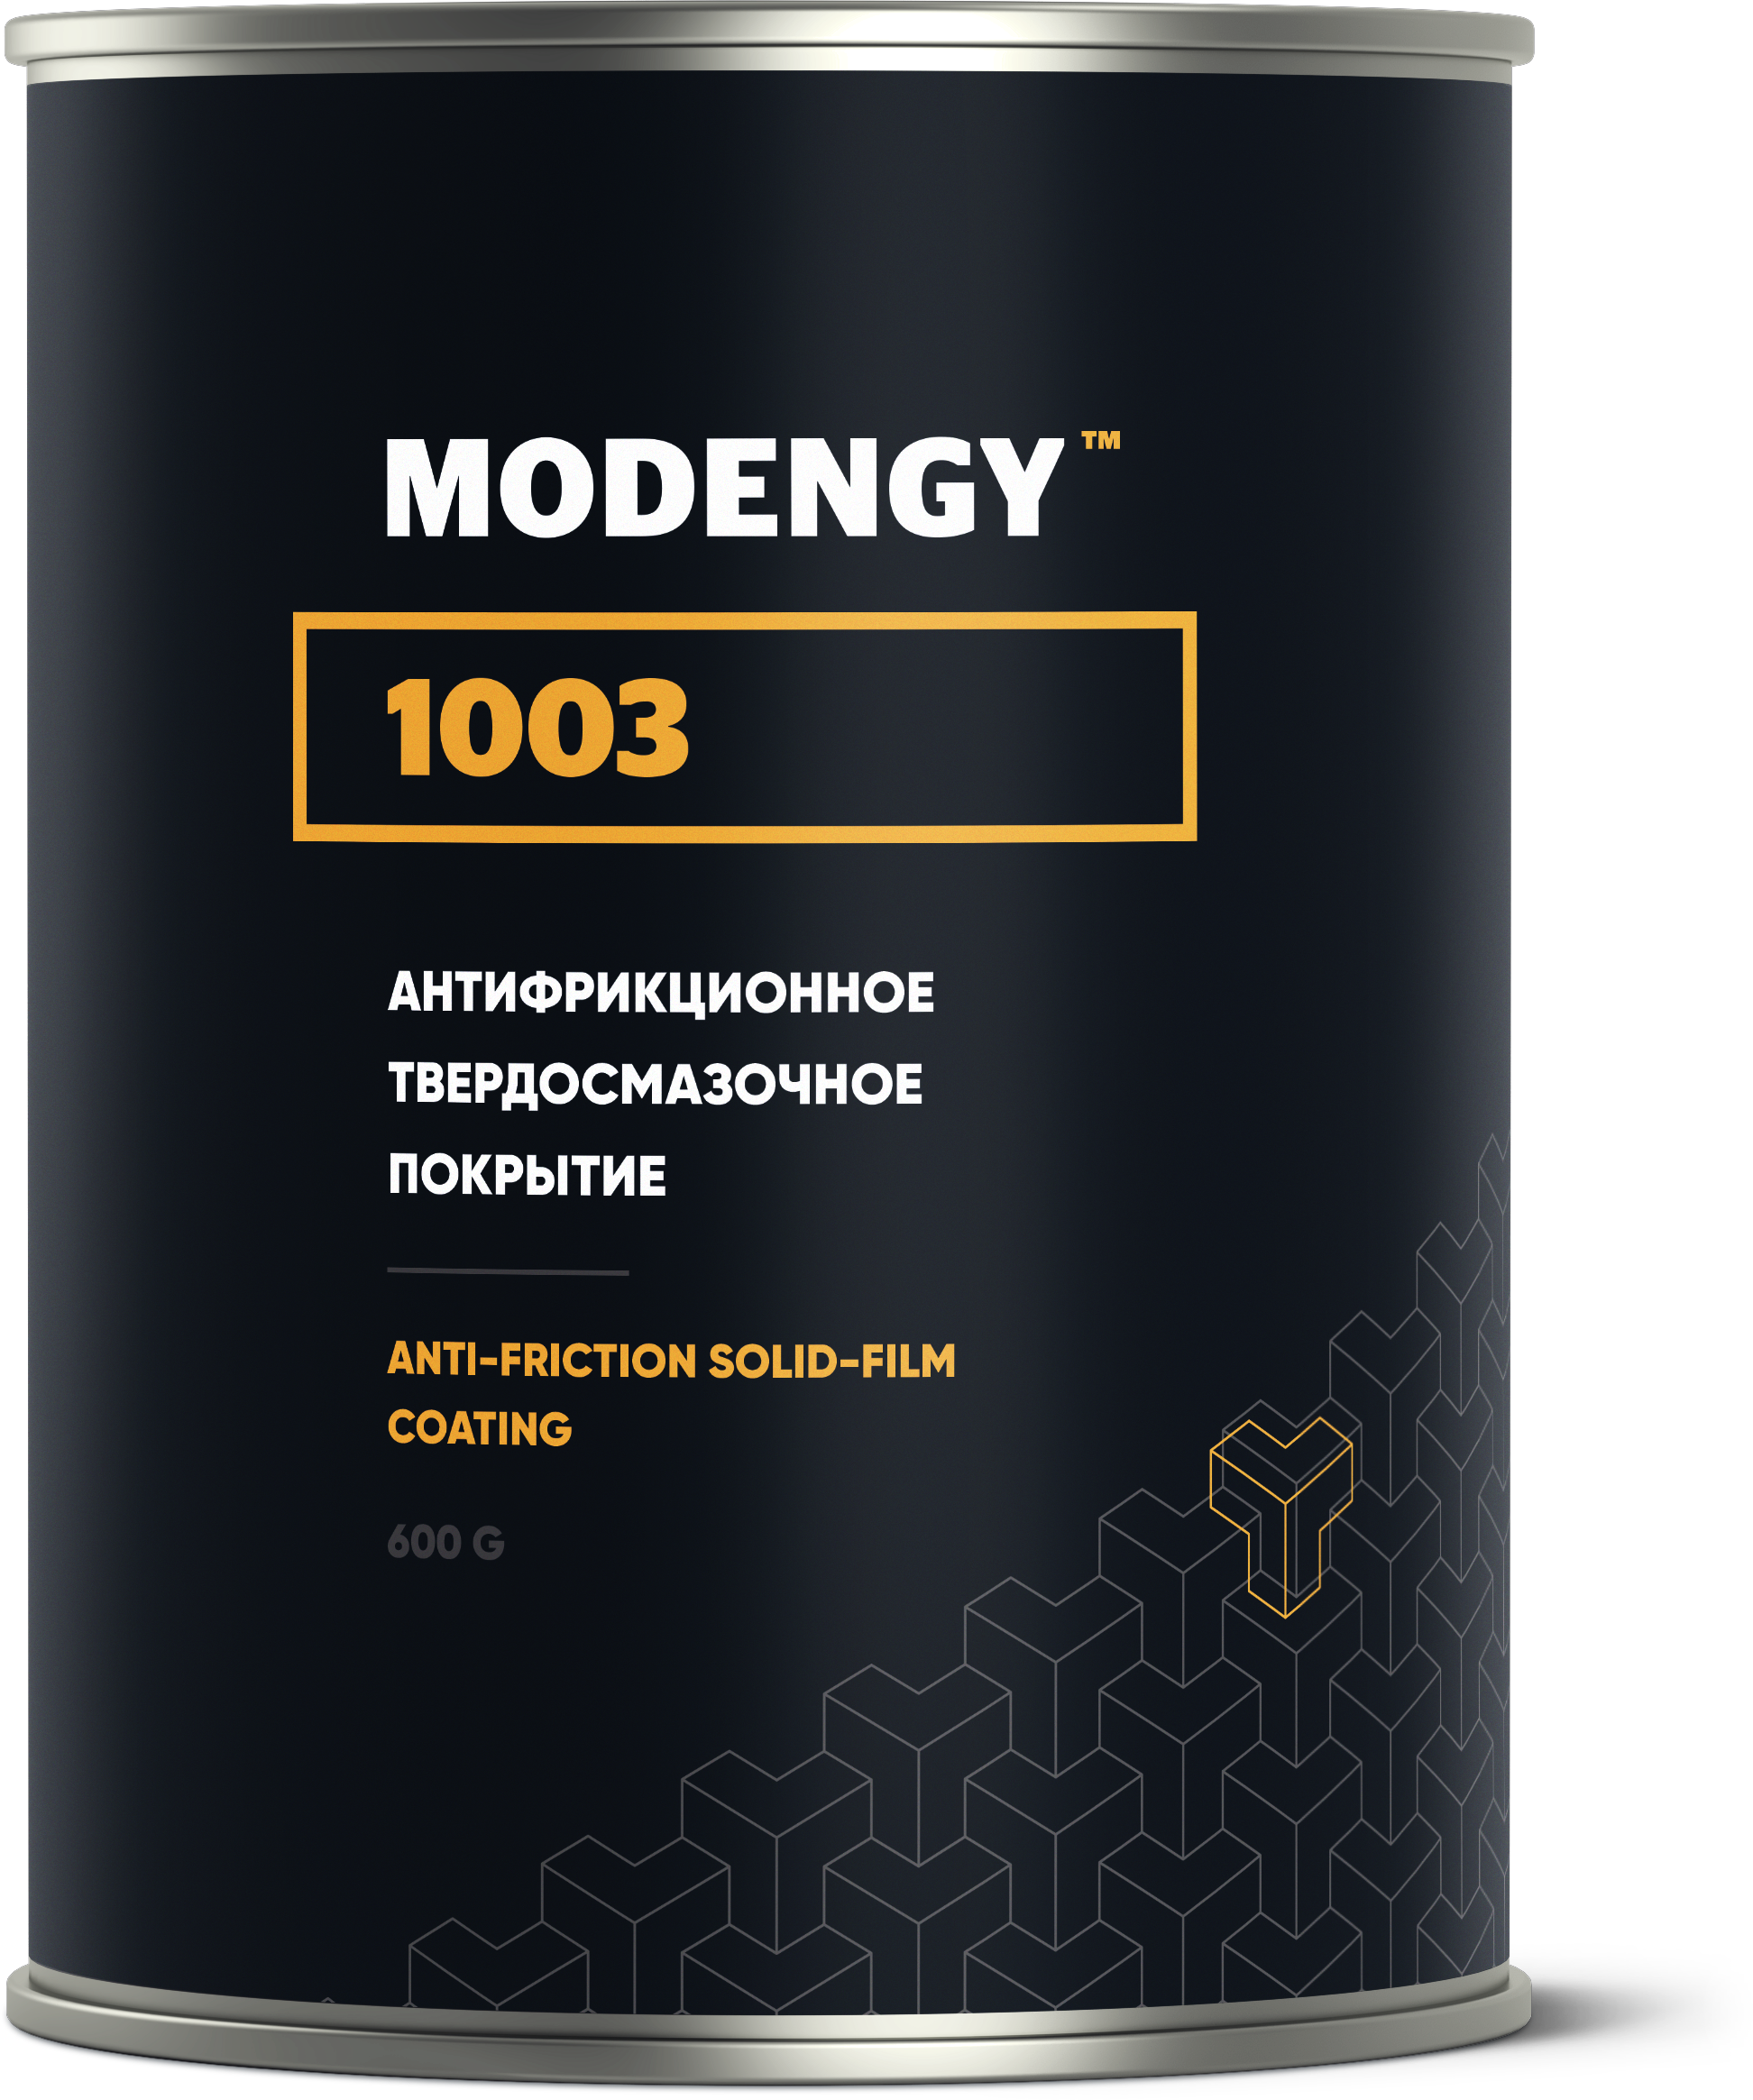 Антифрикционное твердосмазочное покрытие MODENGY 1003 (600 г)